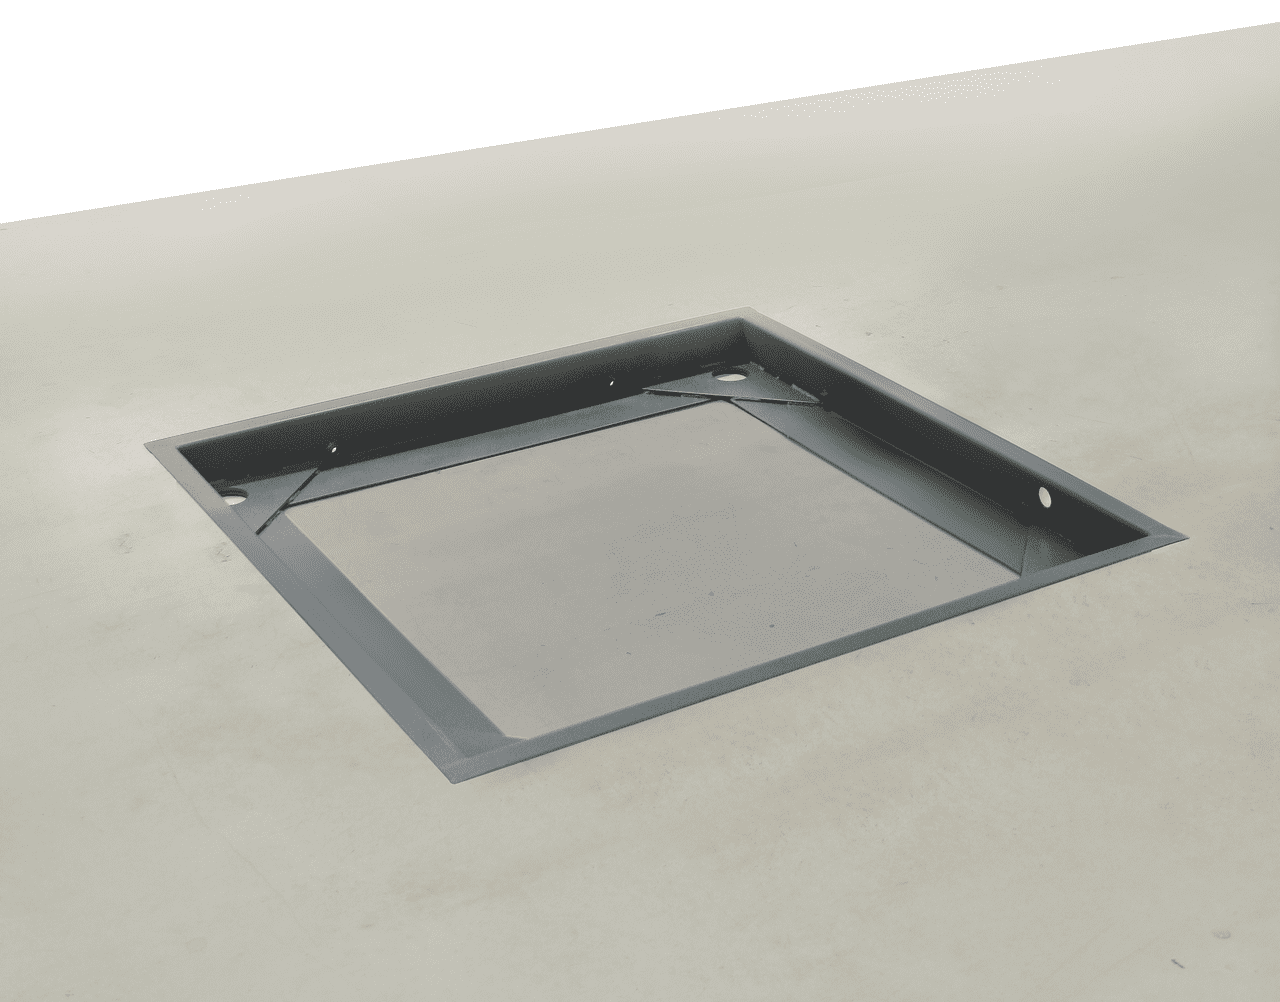 Grubenrahmen aus Stahl in einem grauen Betonboden eingelassen. Die Grube ist offen und ein paar Zentimeter tief. 